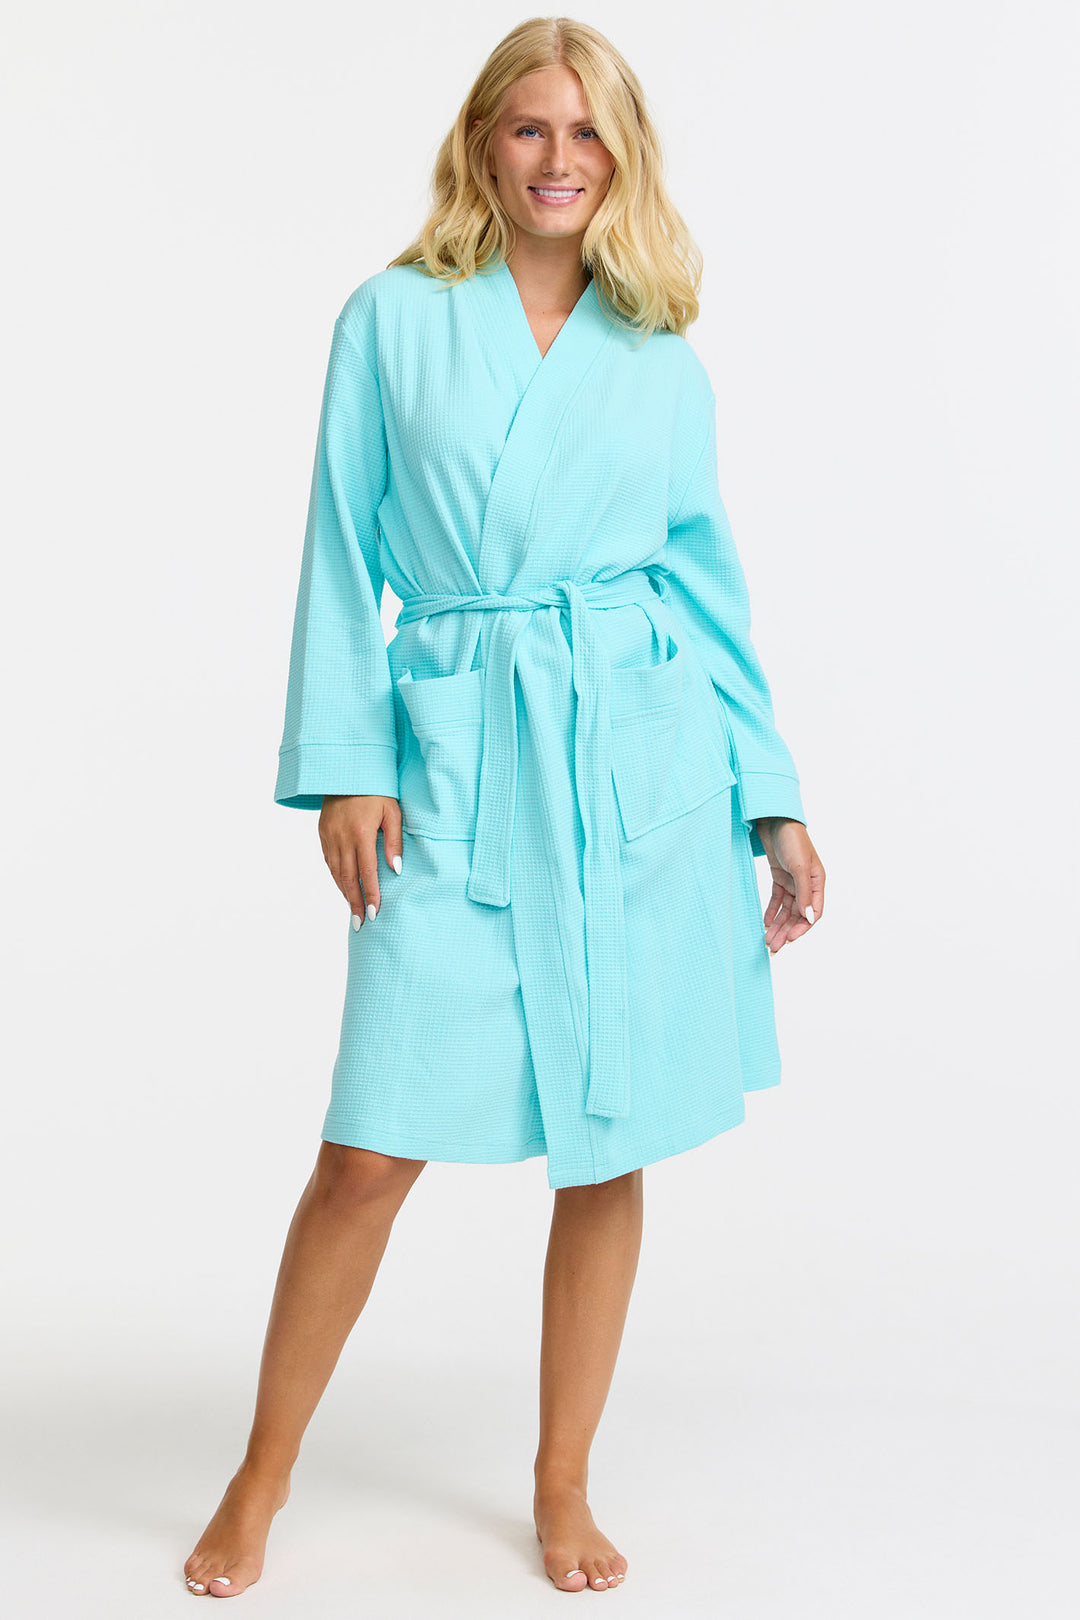 Damella 99206 159 Aqua Blue Waffle Knit Robe Dressing Gown - Shirley Allum Boutique